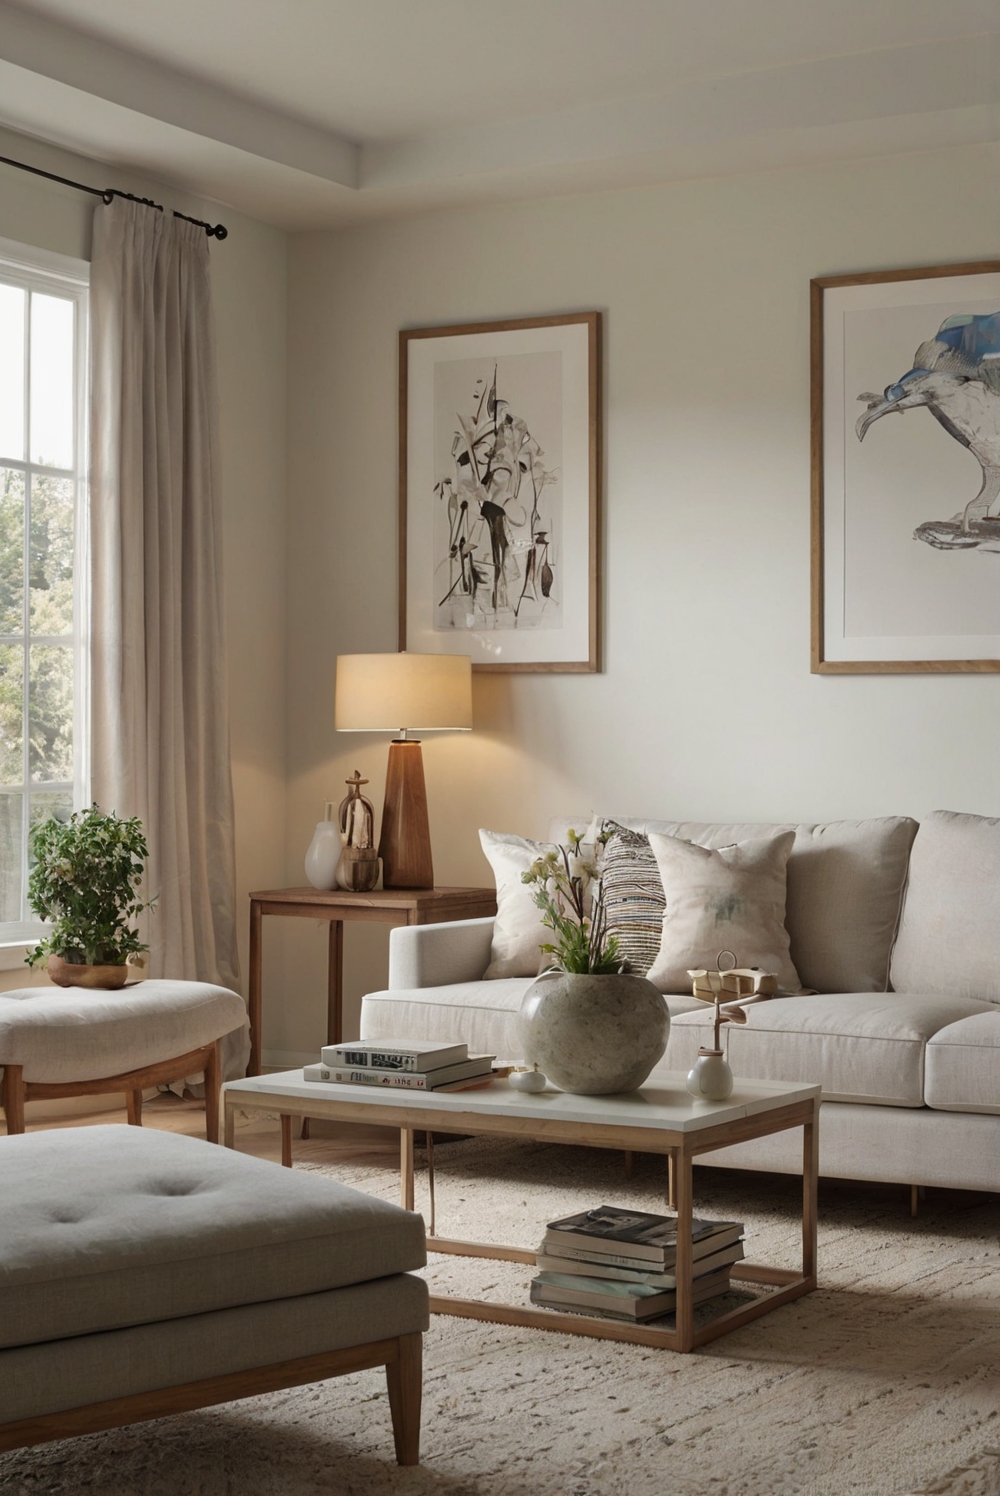 Eider White SW, home decorating, home interior, interior design, space planning, bedroom design, kitchen designs